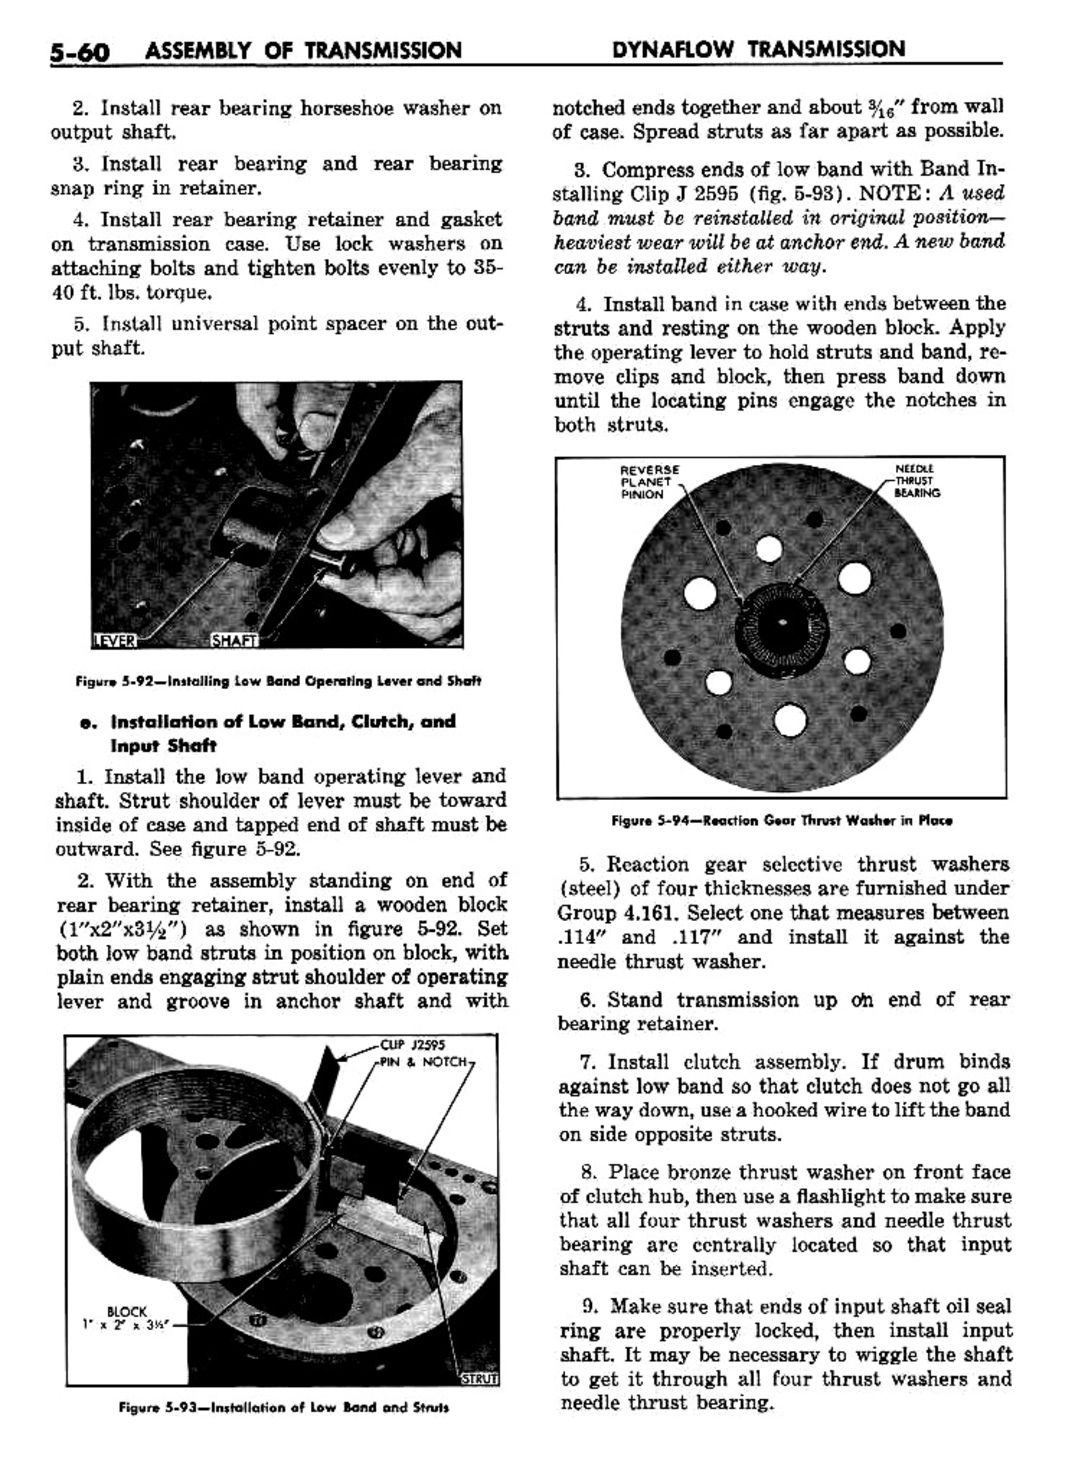 n_06 1957 Buick Shop Manual - Dynaflow-060-060.jpg